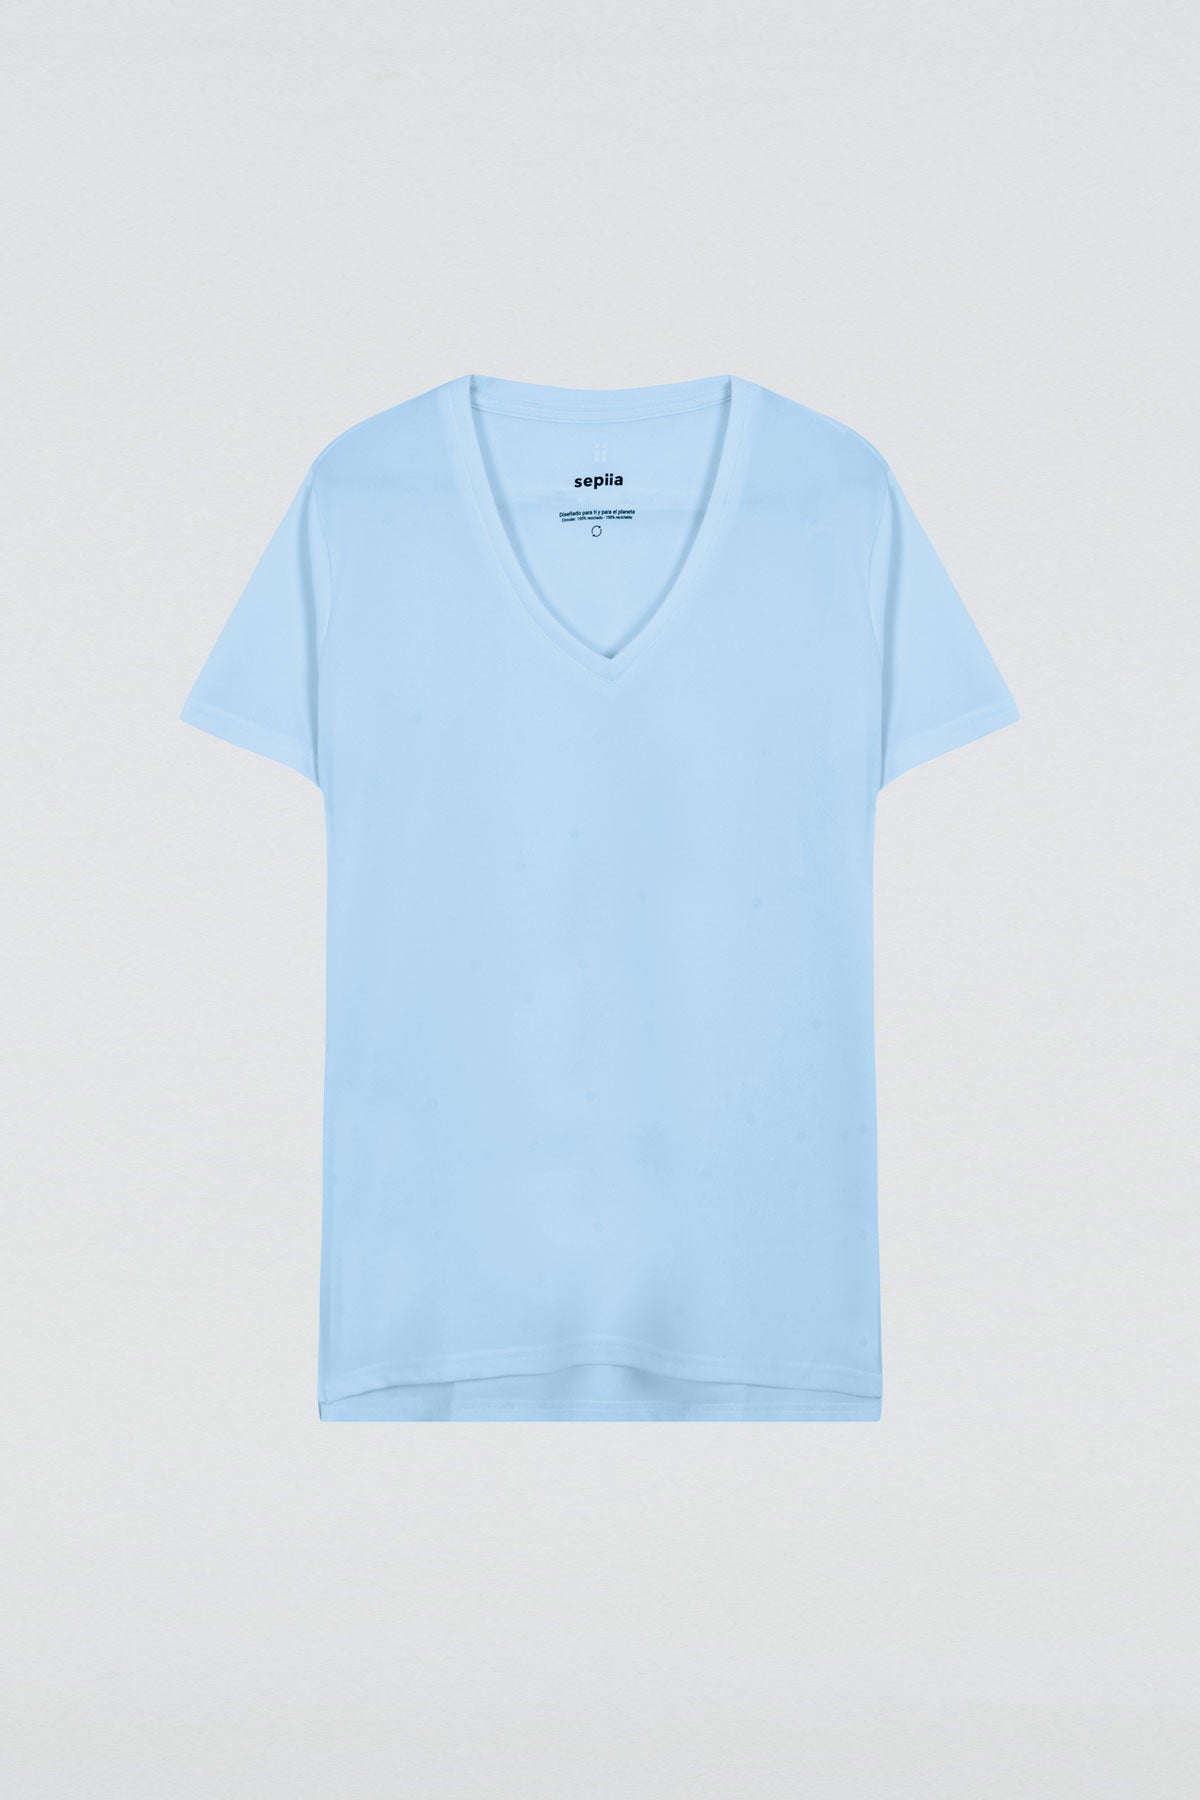 Top para mujer sin mangas con escote pico en color azul niebla, básico y perfecto para el verano. Foto plano